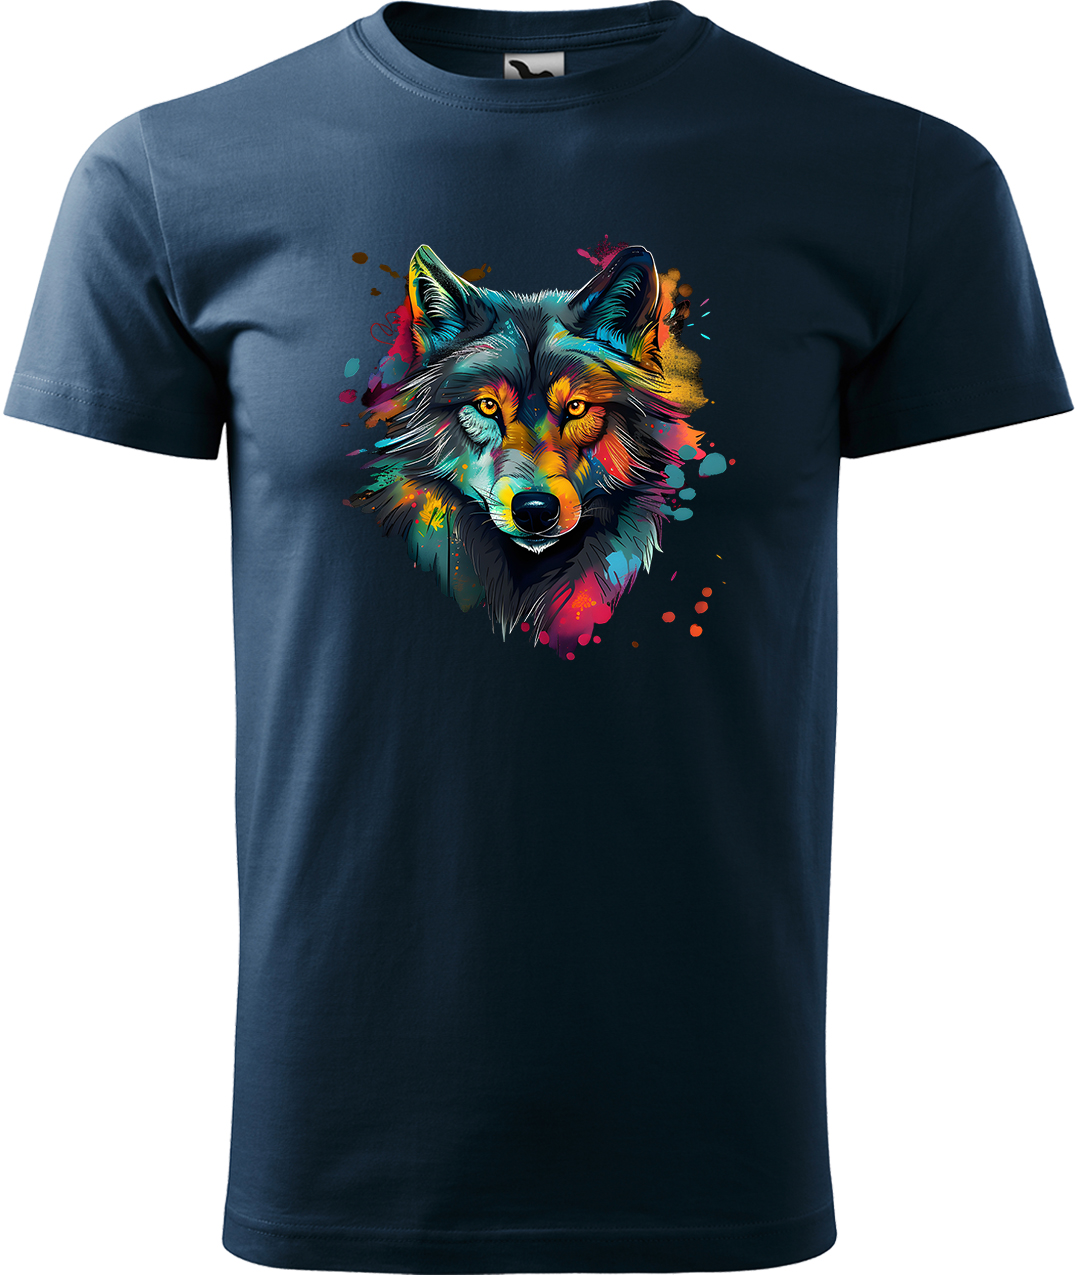 Pánské tričko s vlkem - Malovaný vlk Velikost: 4XL, Barva: Námořní modrá (02), Střih: pánský